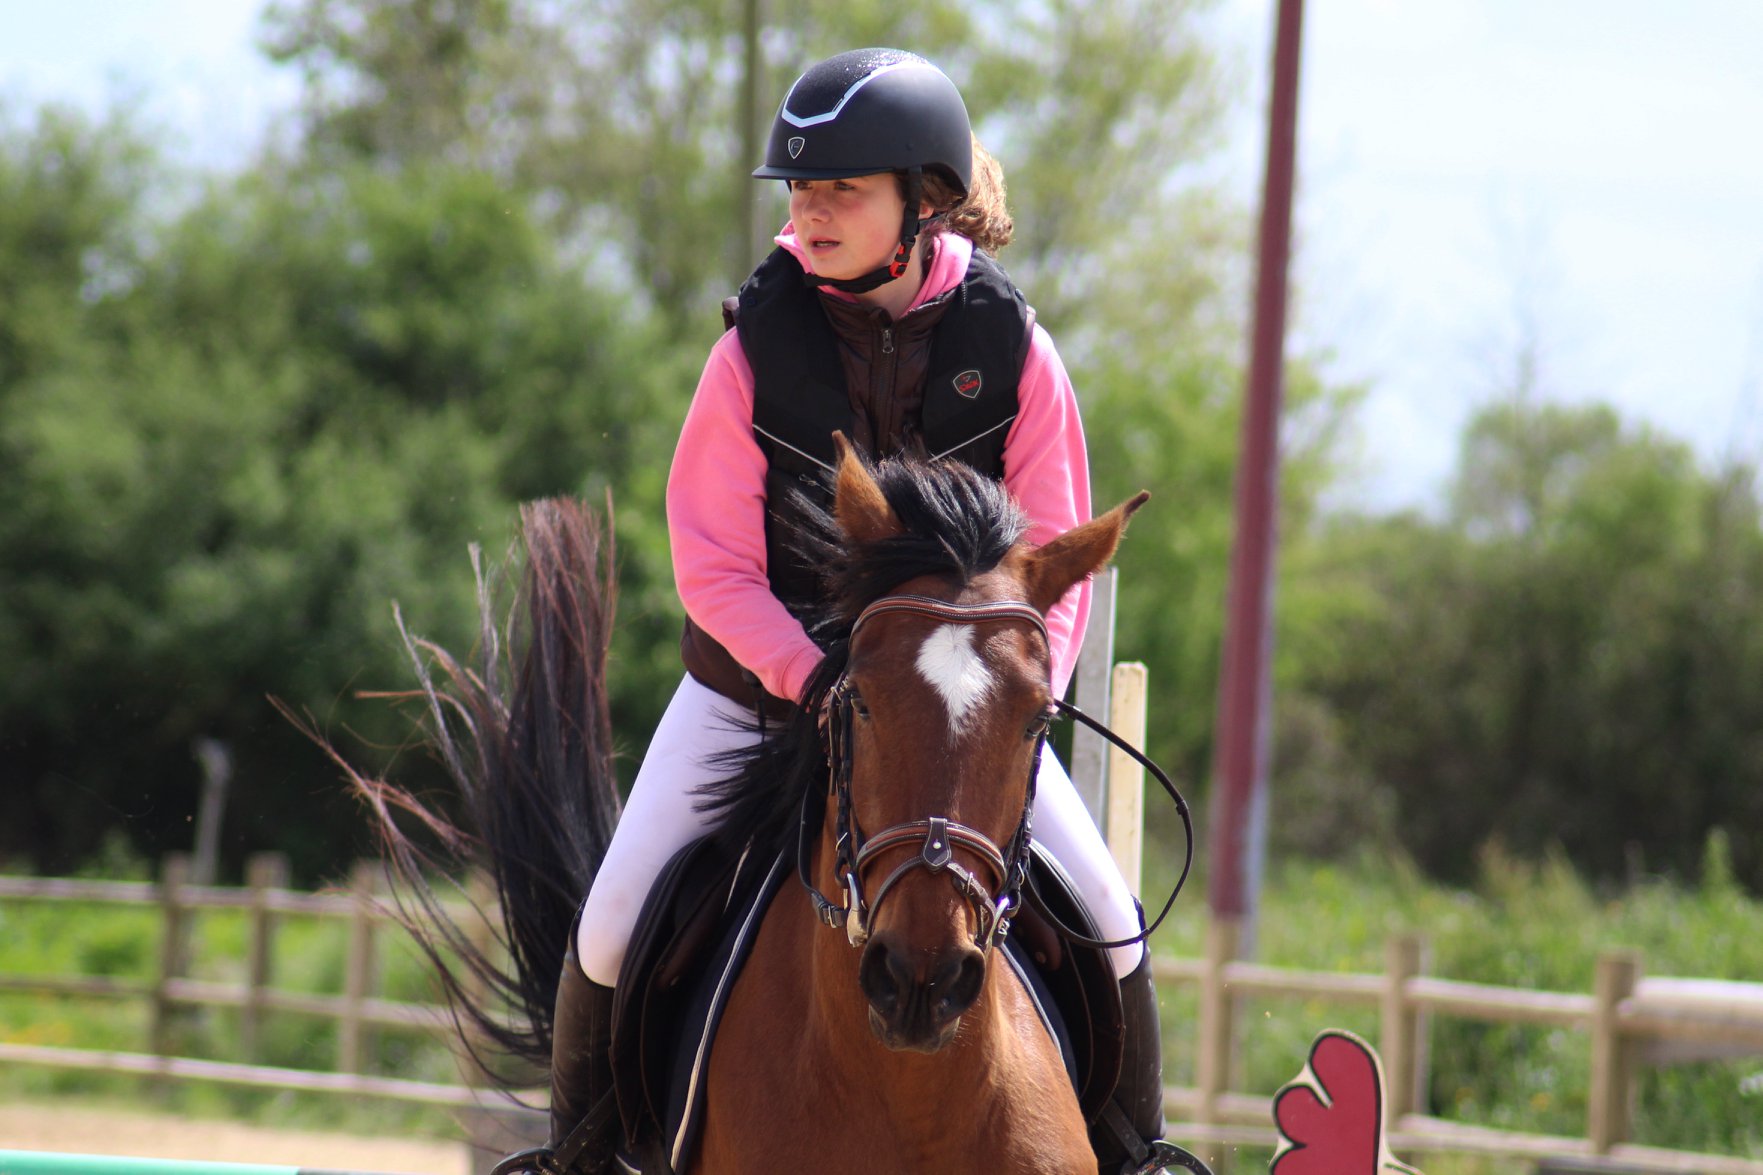 Cours d'équitation pour enfants, adolescents et adultes